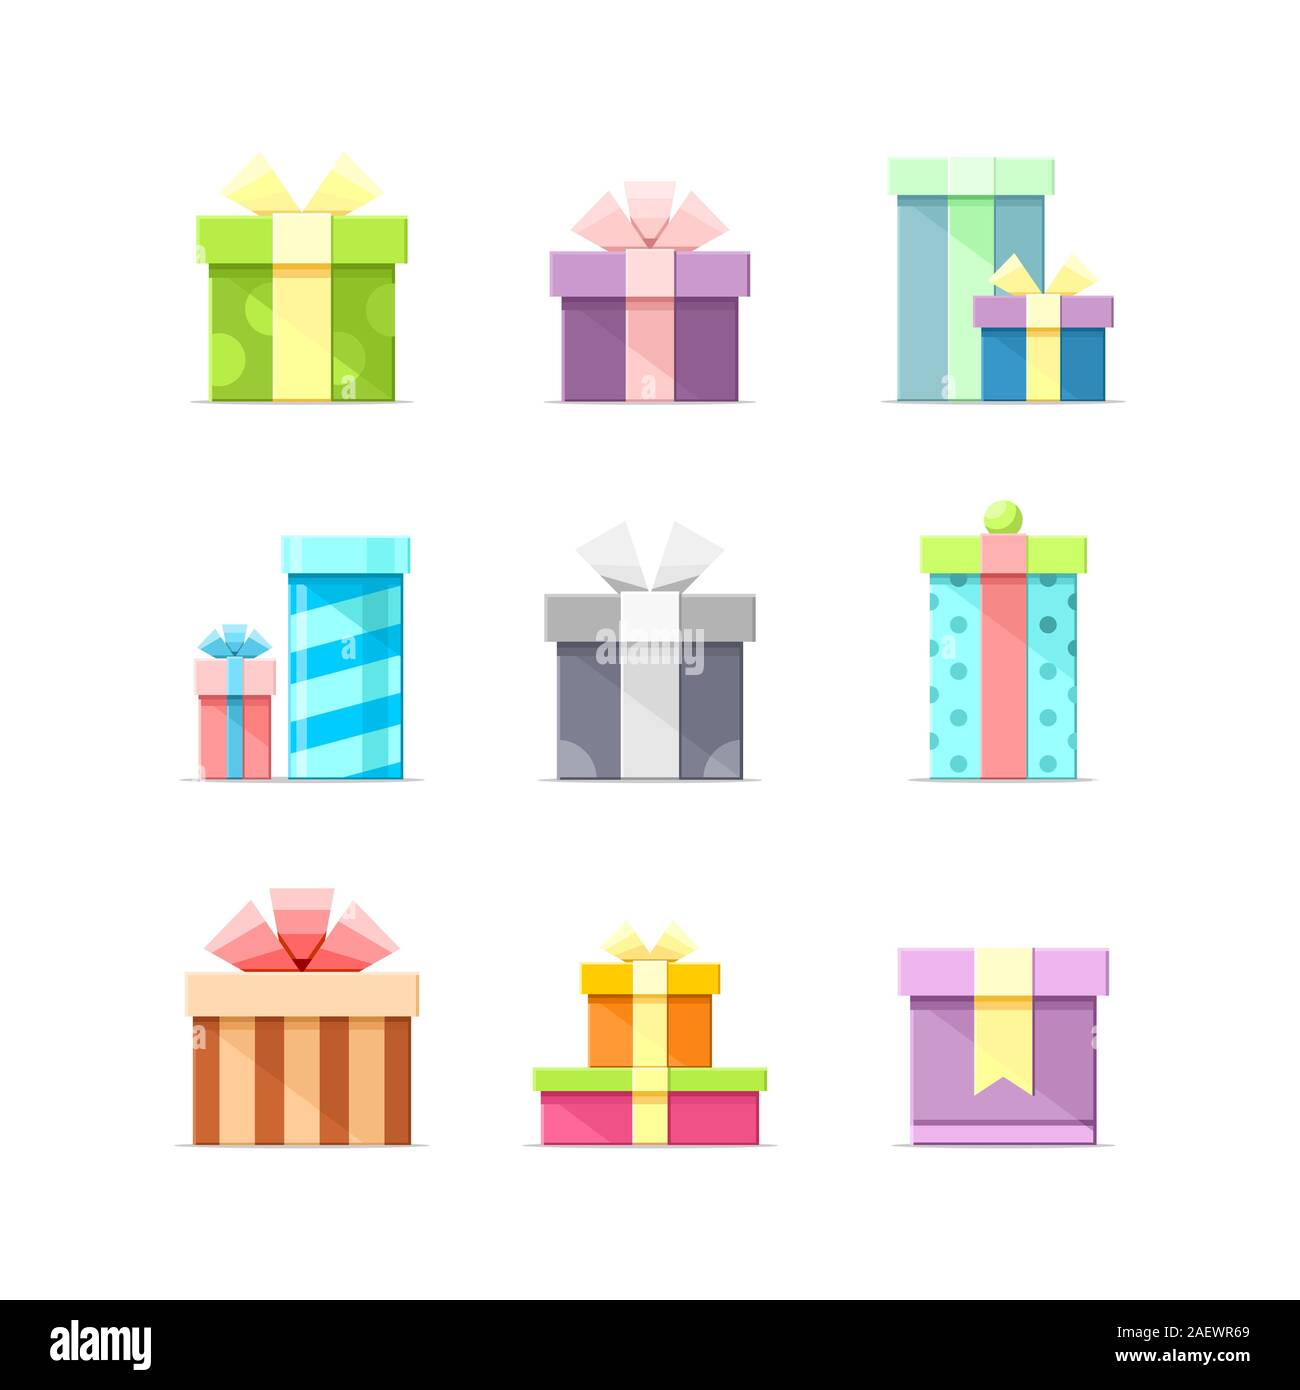 9 Bunte Vektor flache Kartons mit Bändern auf weißem Hintergrund. Paket, Geschenk, Geschenk, Geburtstag, Party, Symbole, Satz 1 Stock Vektor